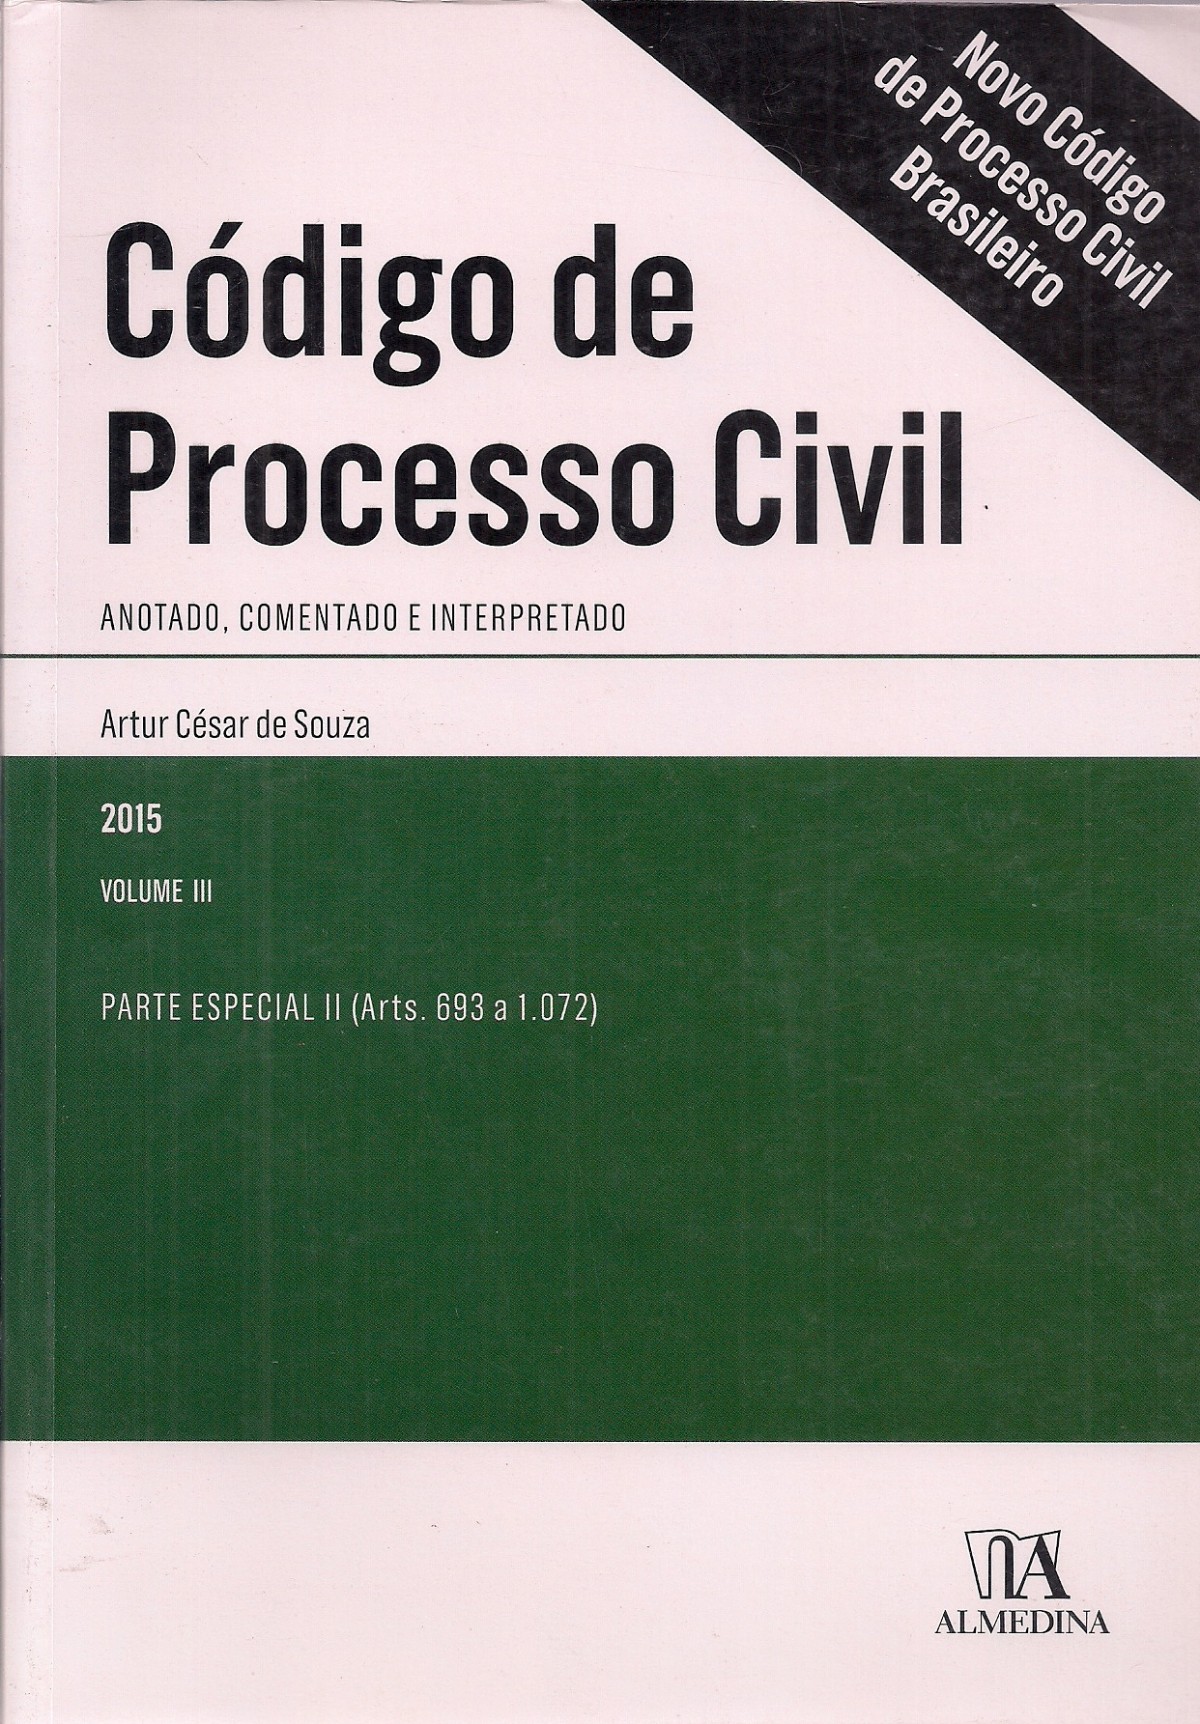 Foto 1 - Código de Processo Civil - Volume III - Parte Especial II (arts. 693 a 1.072)